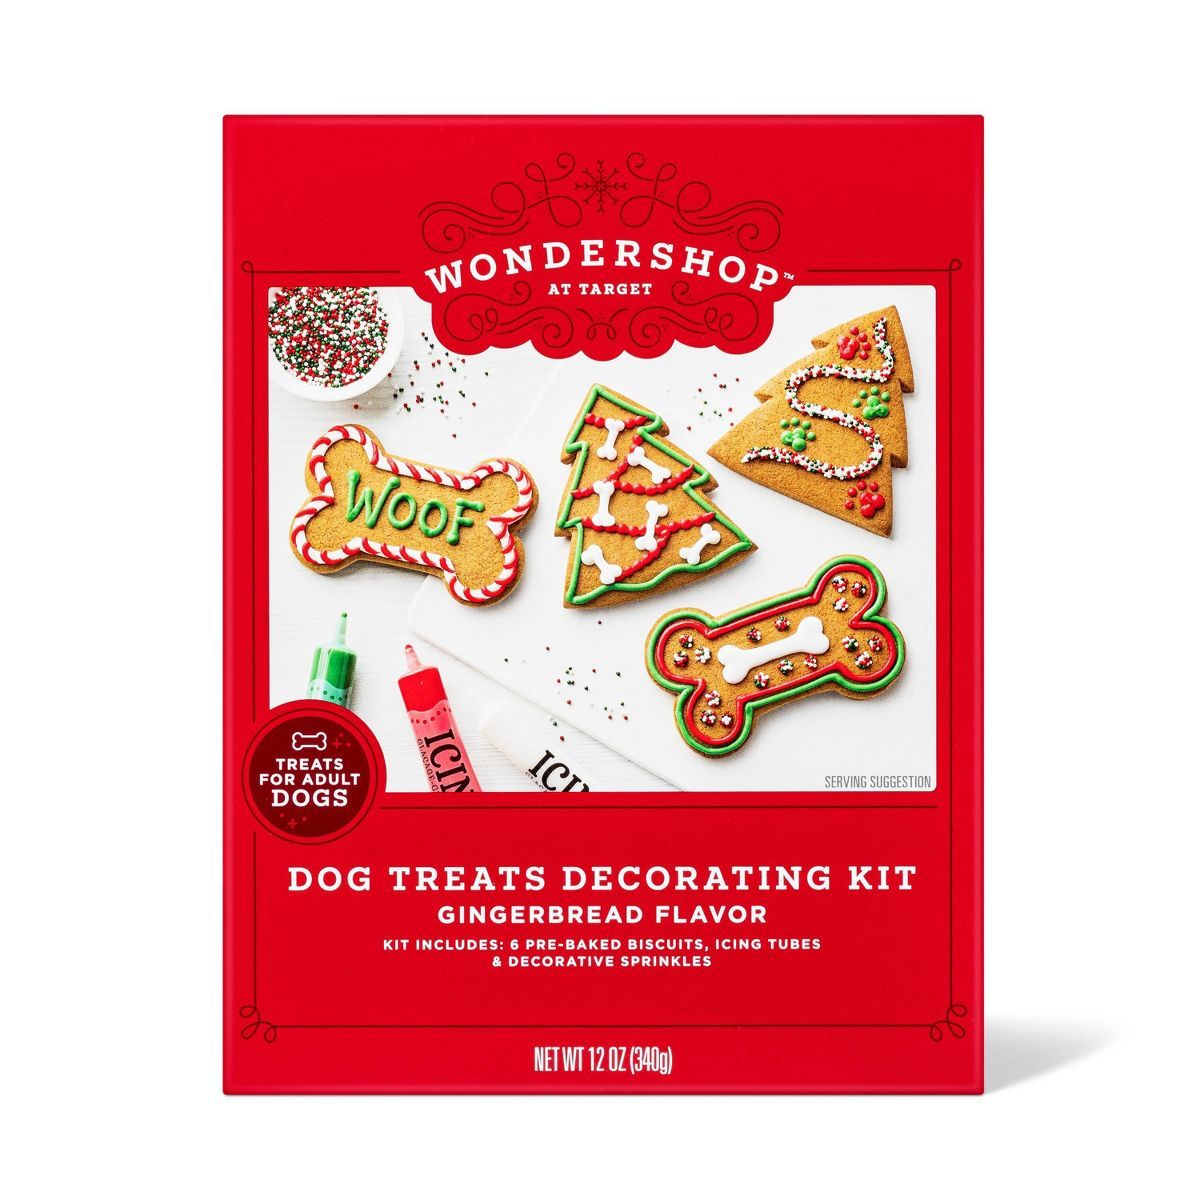 Dog Treat Decorative Kit Gingerbread Flavor For Adult Dog - 12oz - Wondershop™ | Target